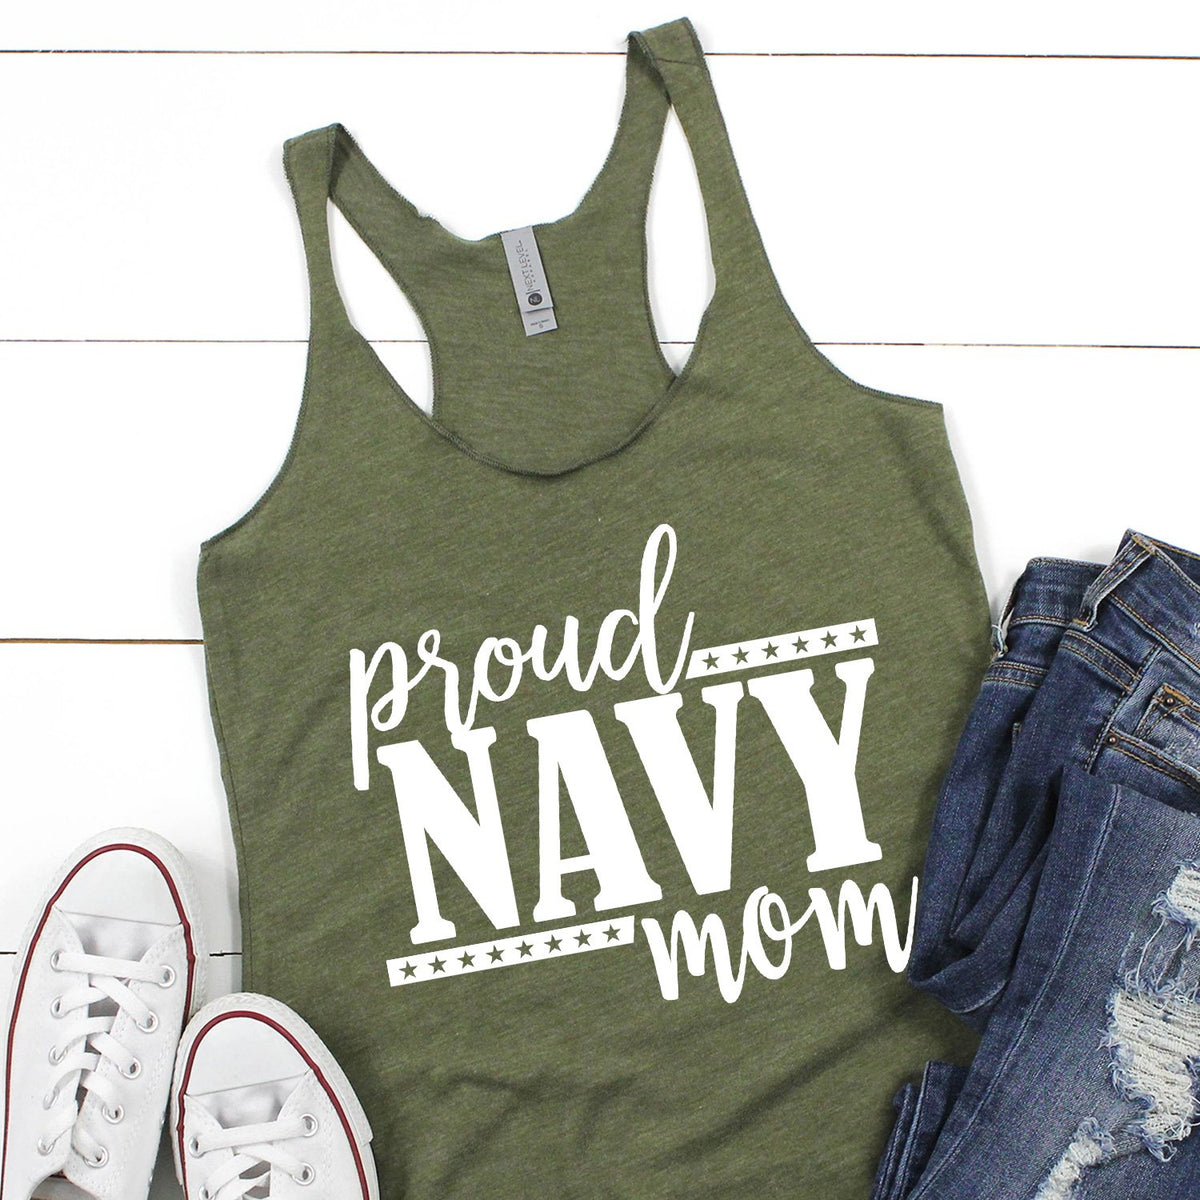 Proud Navy Mom - Tank Top Racerback